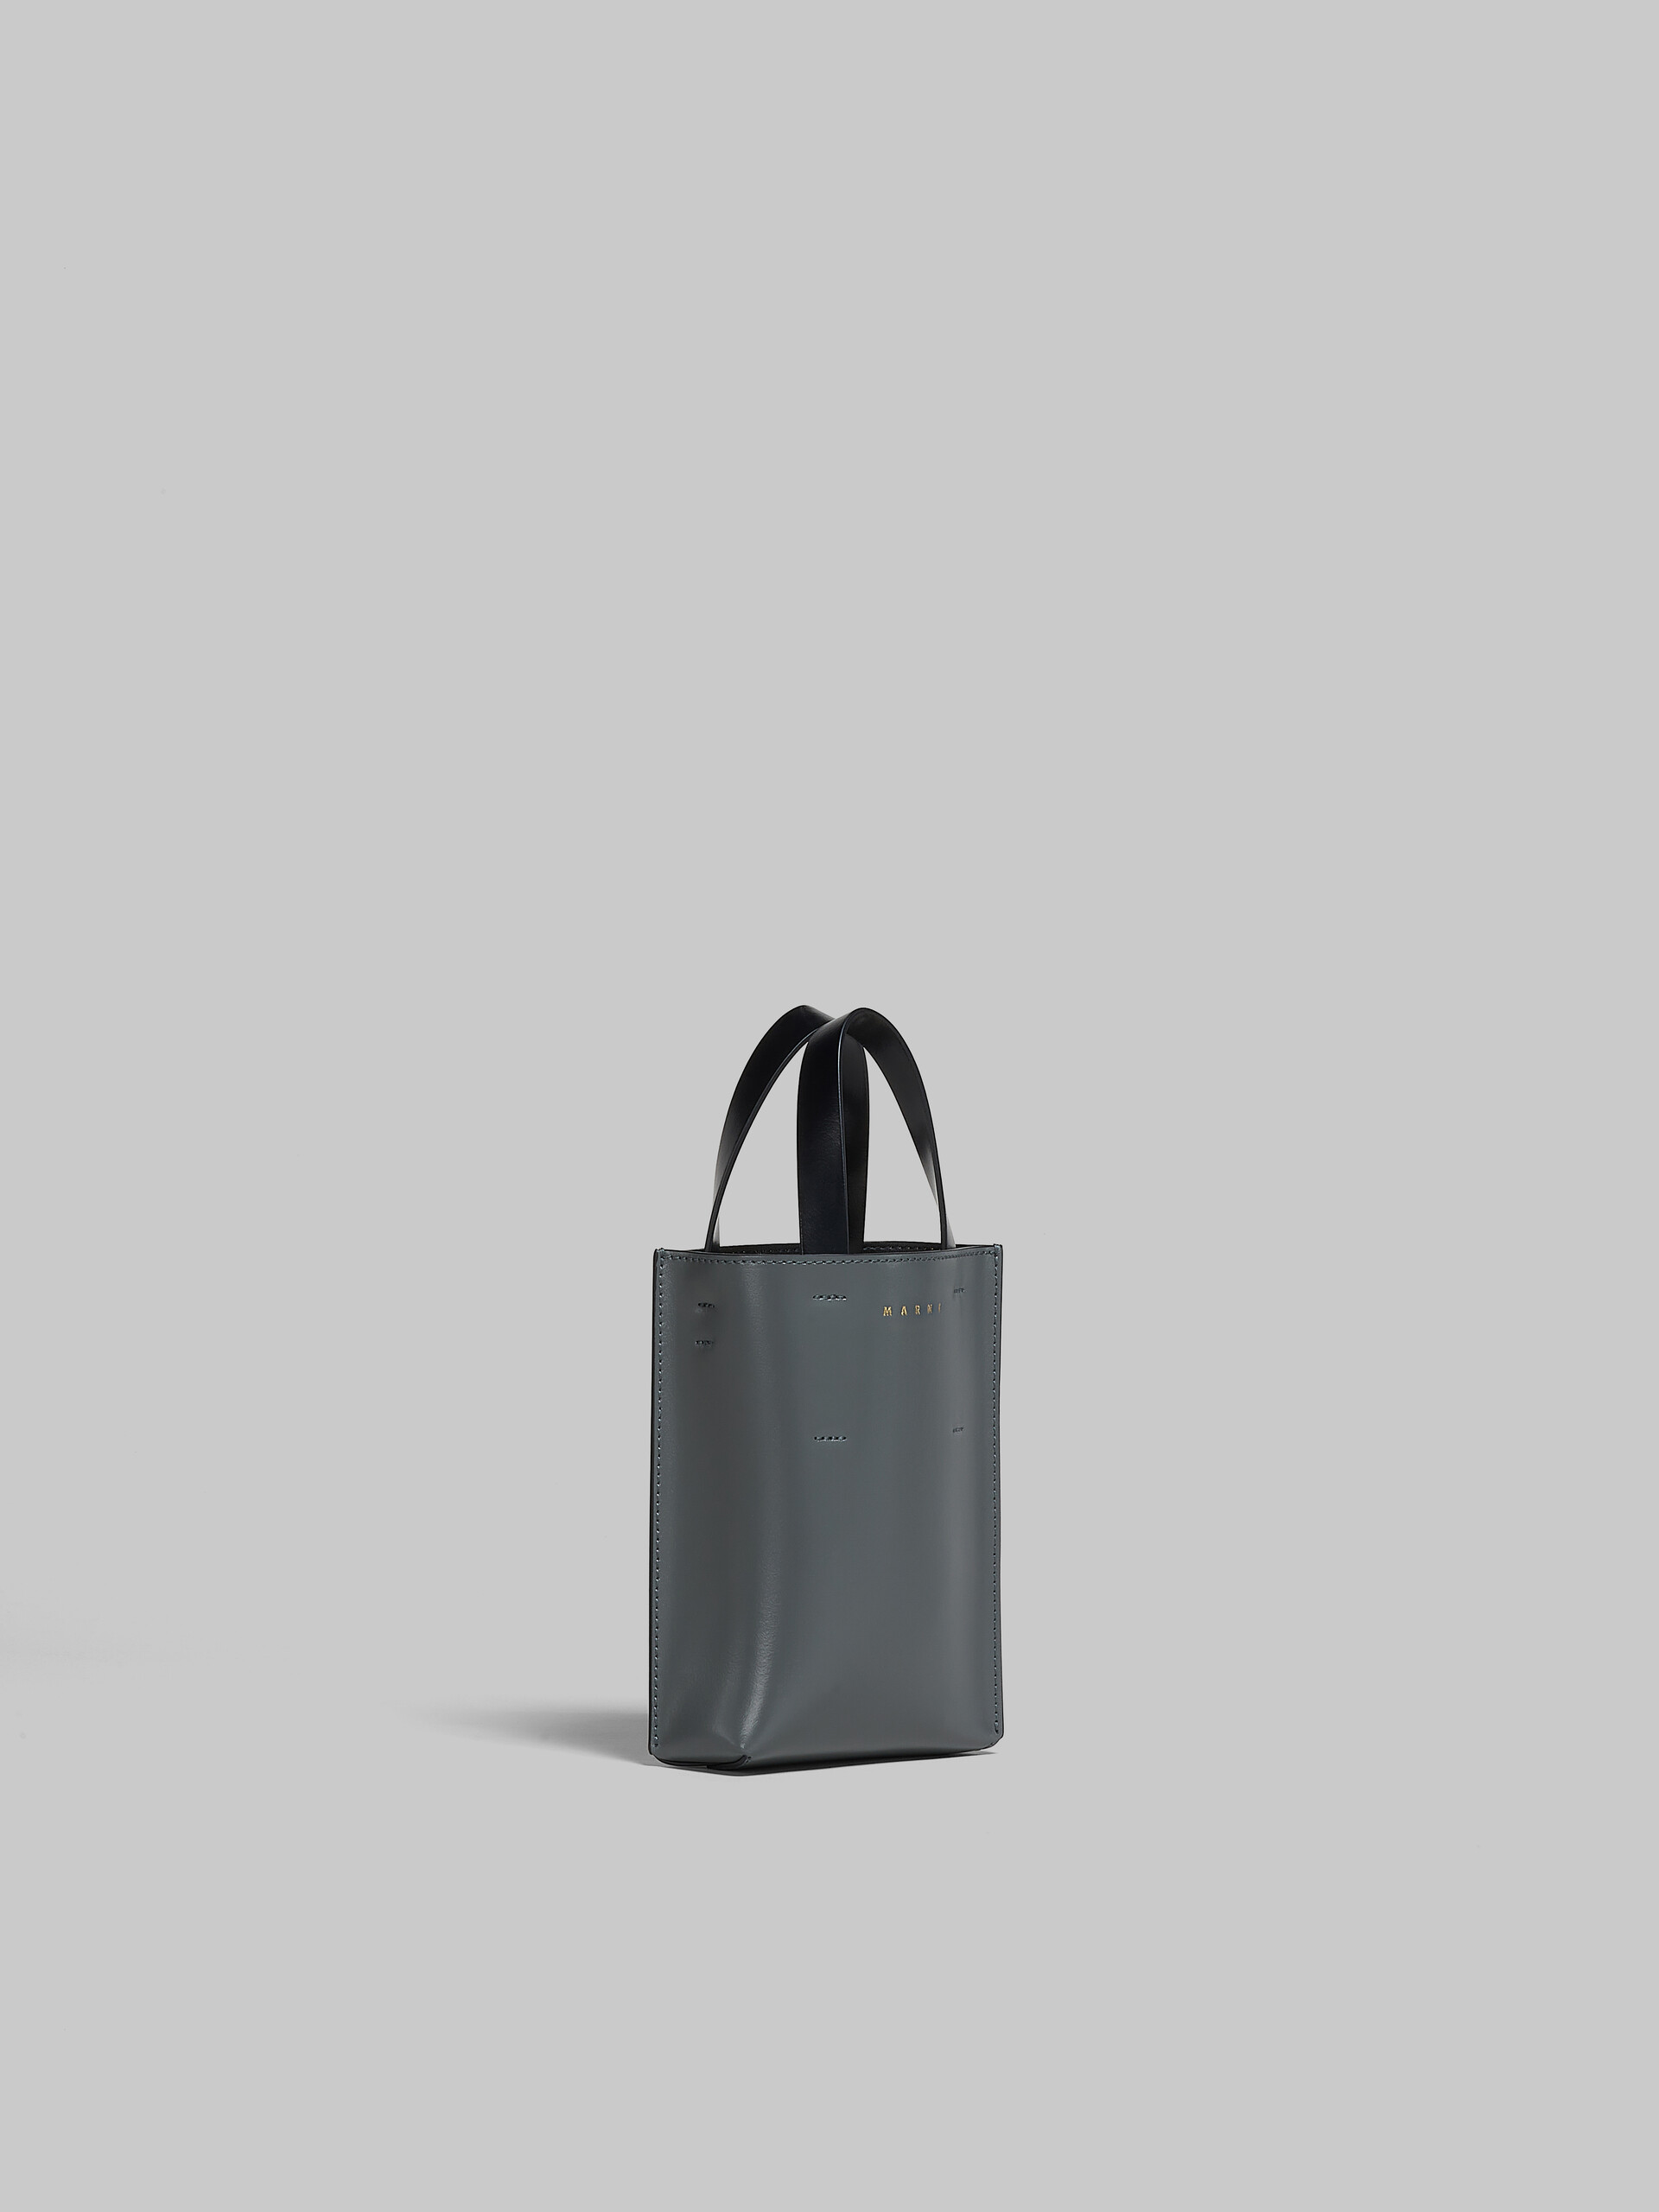 シャイニー＆スムースカーフスキン MUSEO ナノ ショッピングバッグ ブラック ショルダーストラップ付き - ショッピングバッグ - Image 6